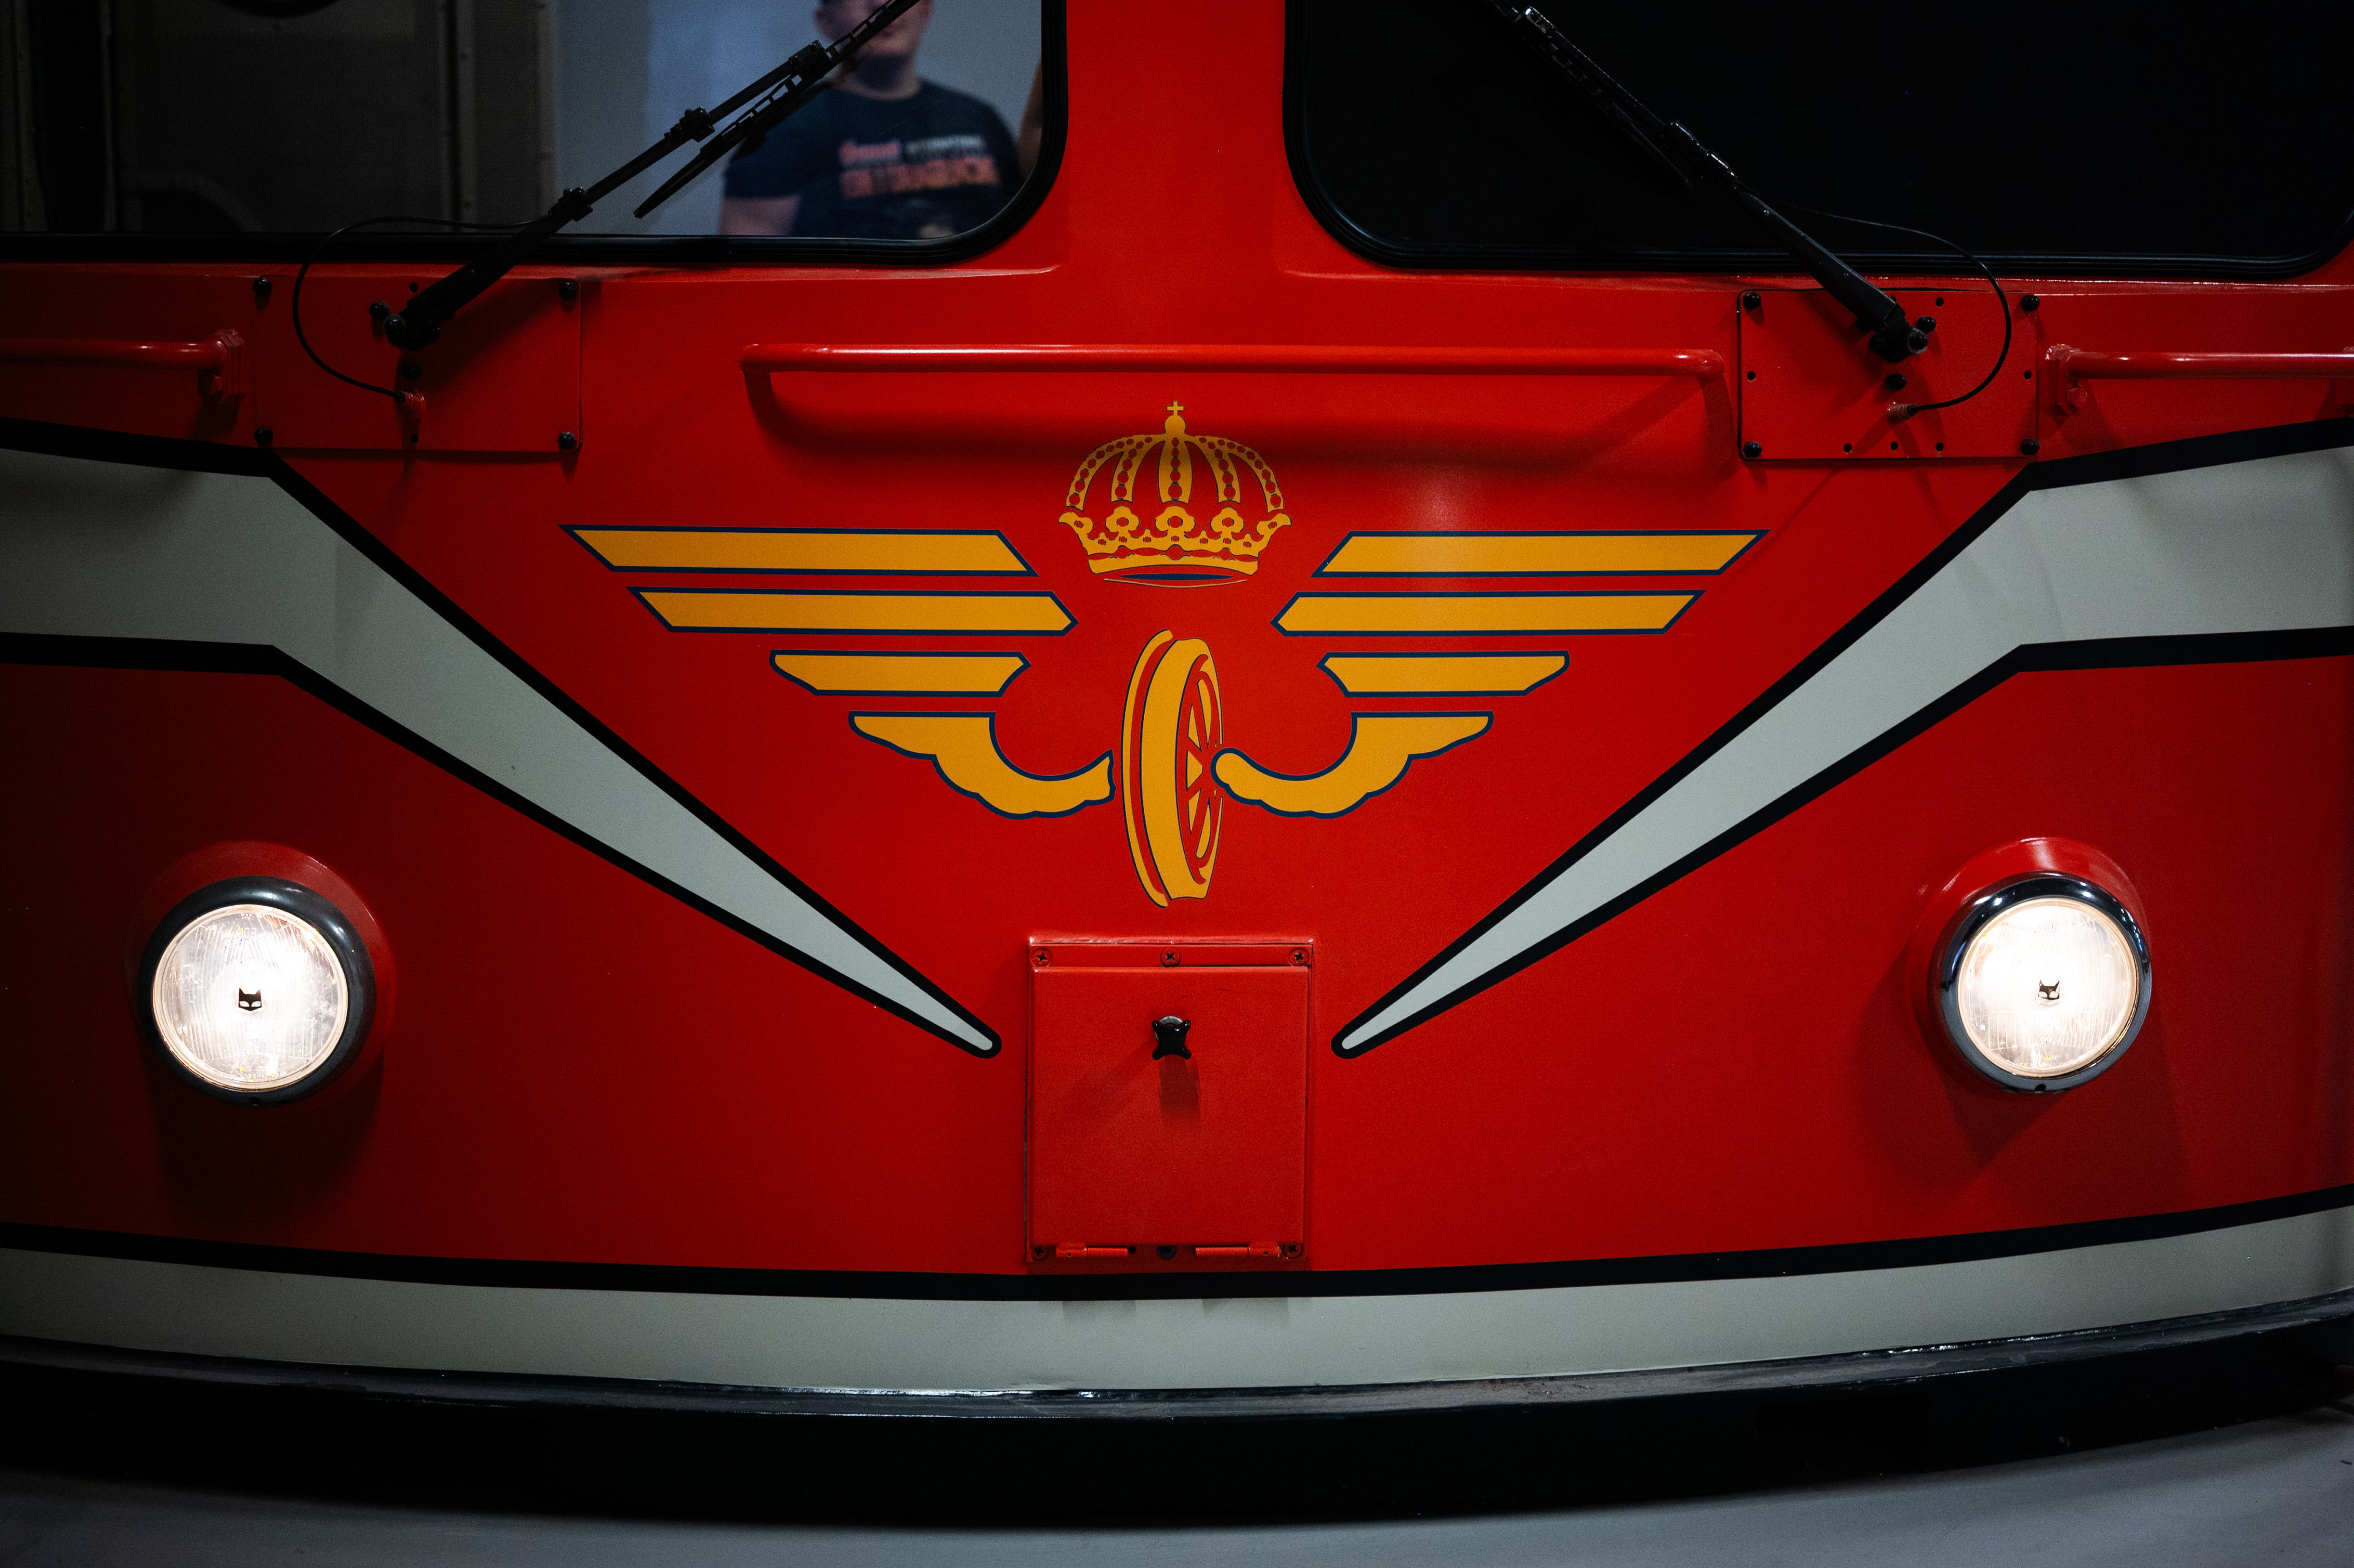 Närbild på en tågvagn fram ifrån. Tågvagnen är röd med vita detaljer och två lysande lampor.